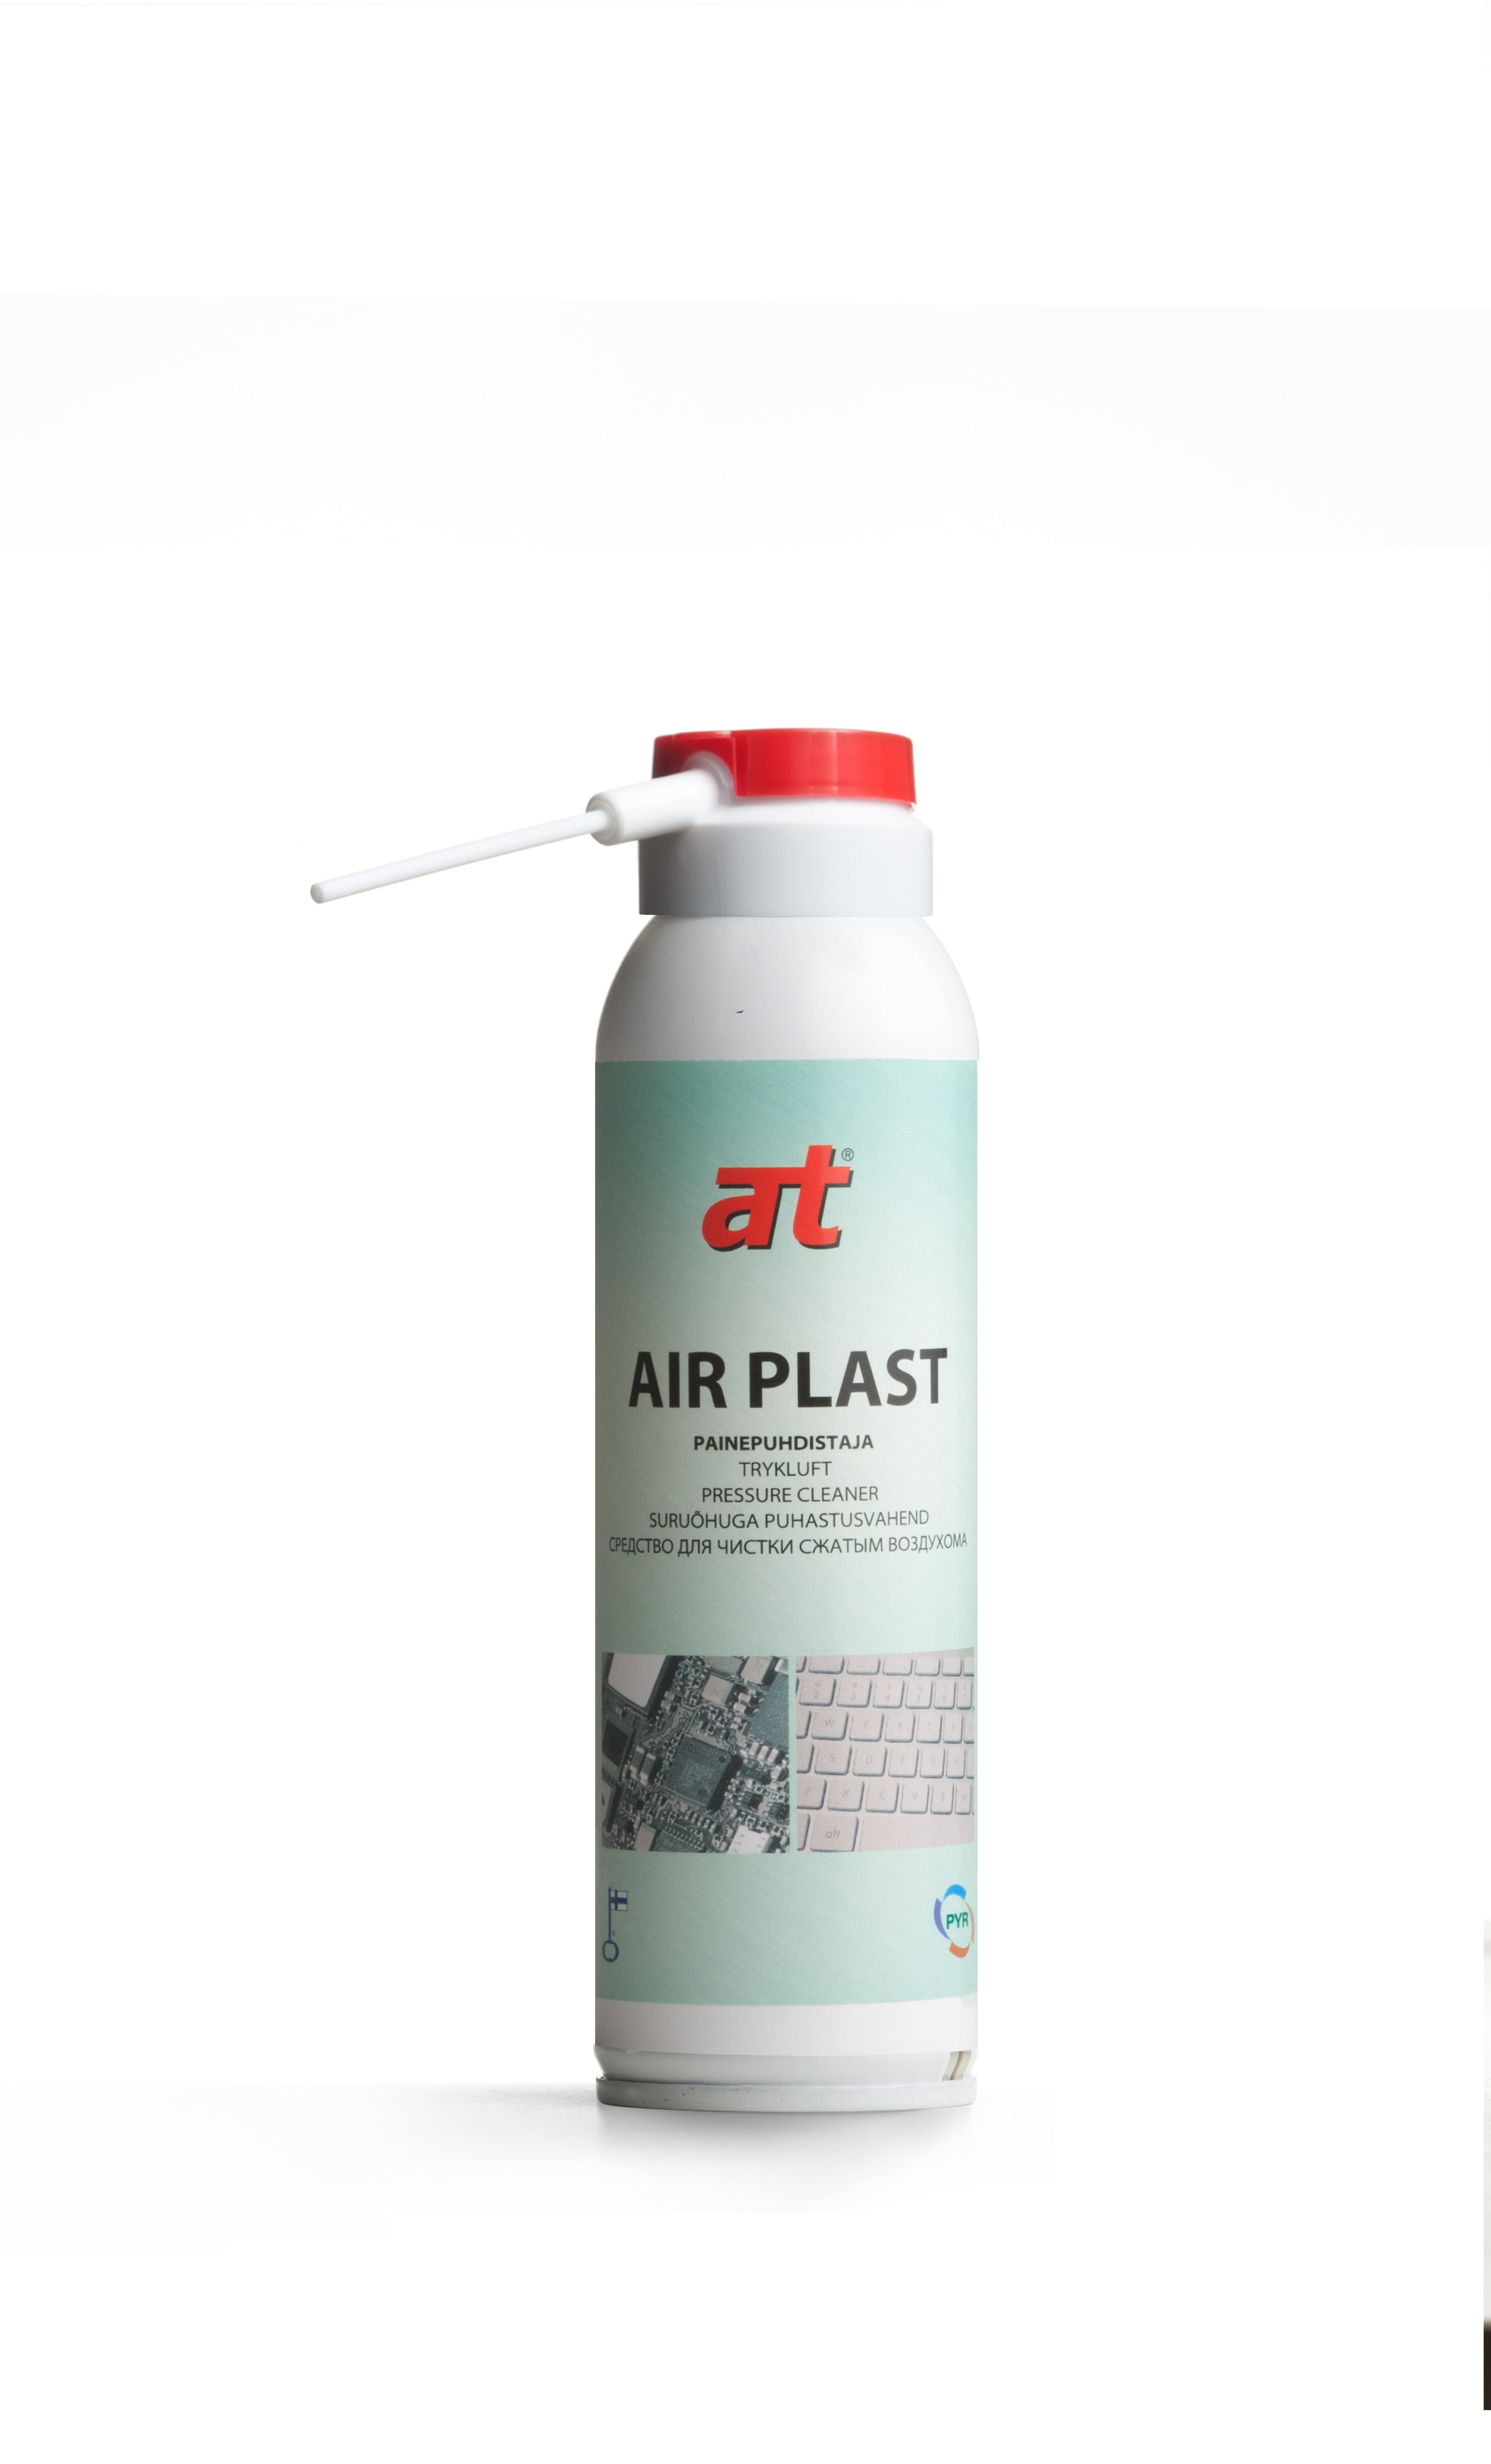 Air Plast painepuhdistaja 3415